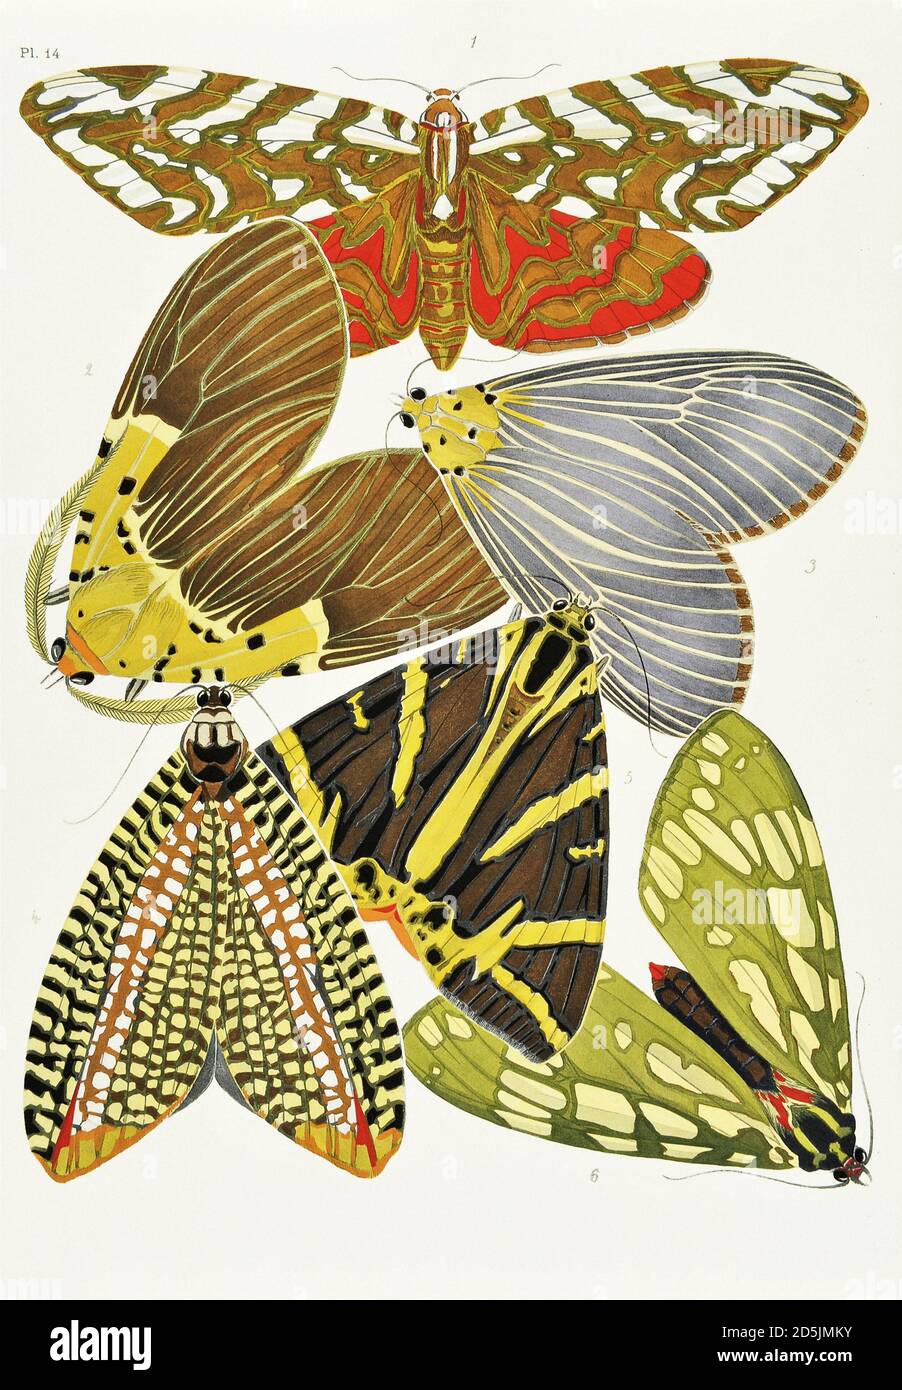 Papillons : vingt panneaux de phototype colorés au motif. PL XIV 1. Archnis dilecta (Mexique) 2. Hypsa borbonica (Congo) 3. Hypsa dominia (Chine) 4. Banque D'Images